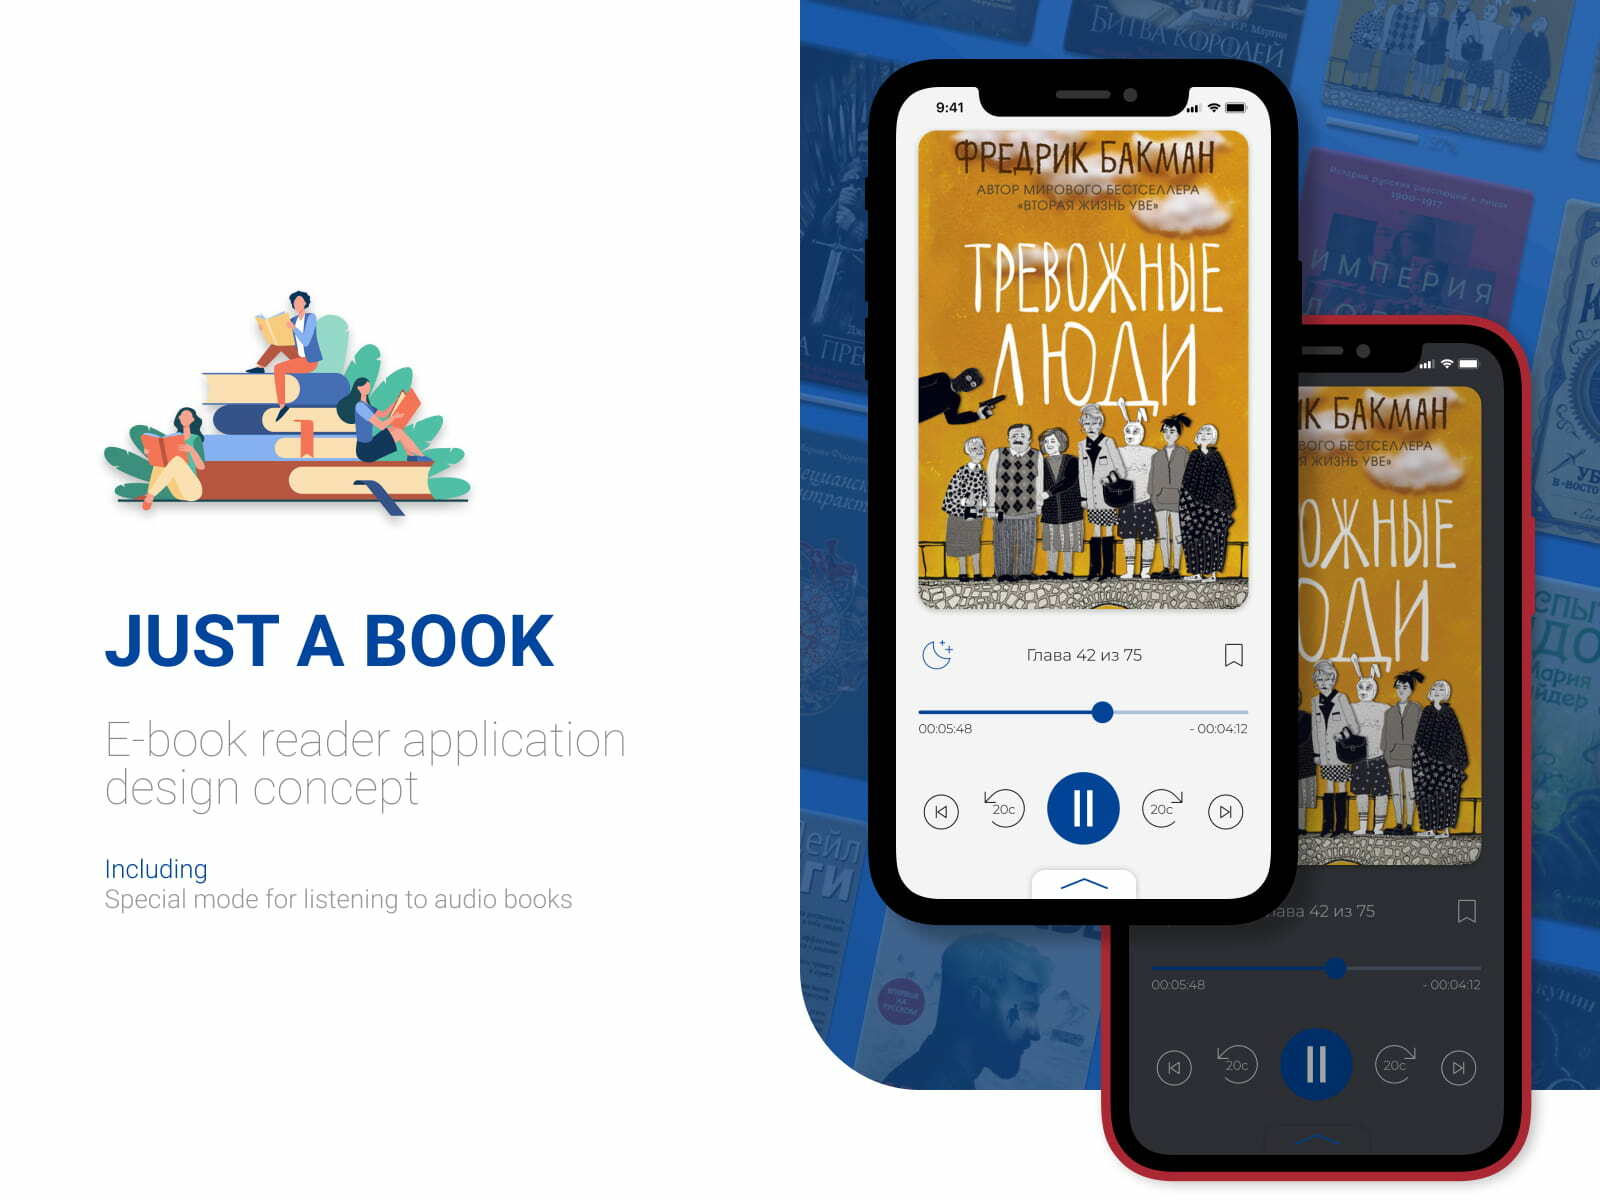 Just a book - Дизайн-концепт приложения для чтения электронных книг